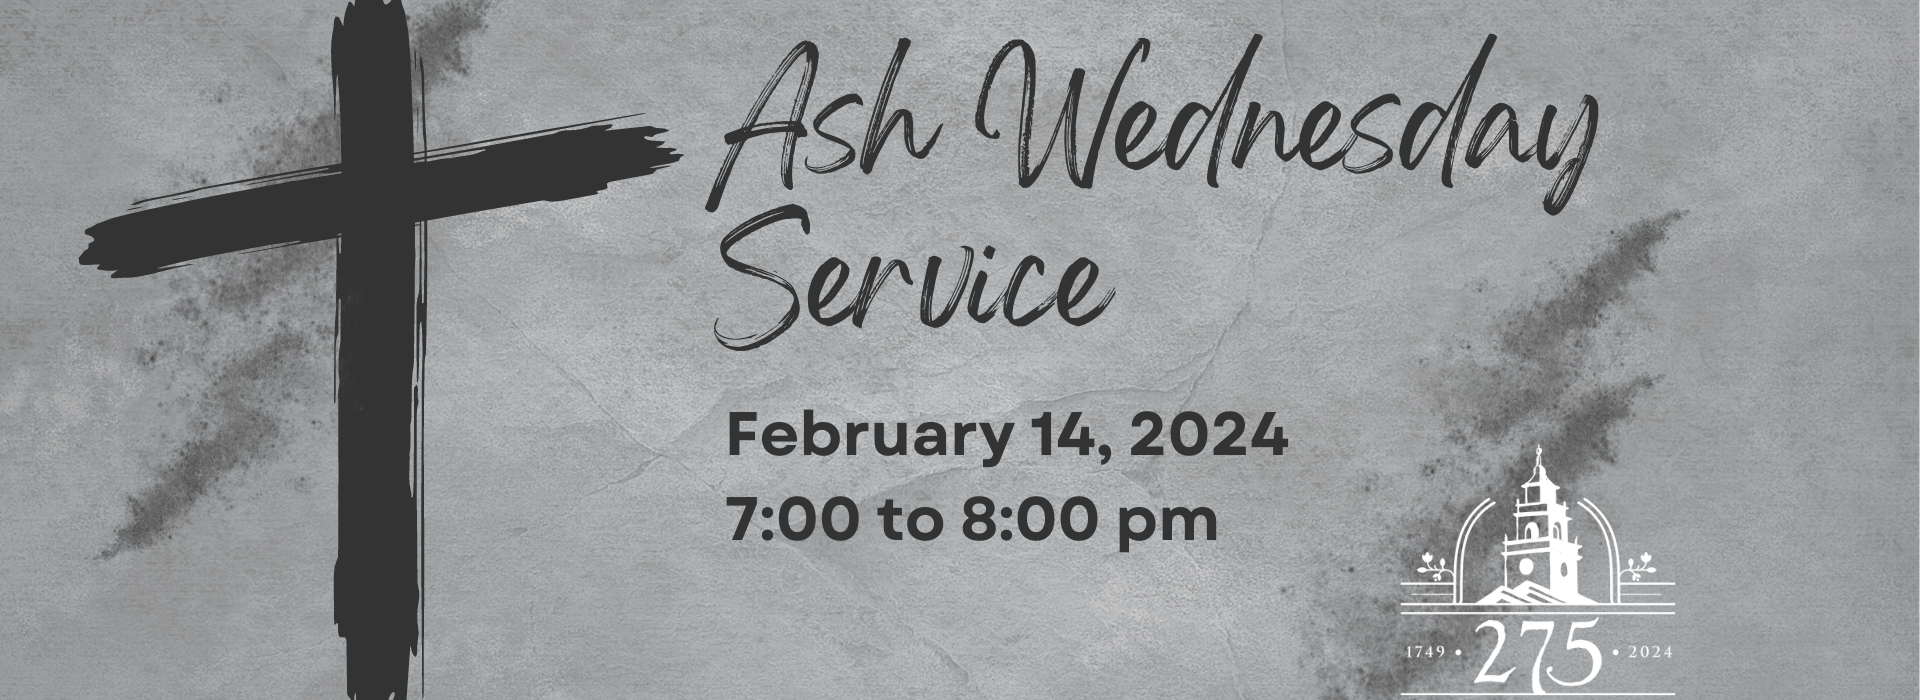 Ash Wednesday Service Feb 14 2024 V1